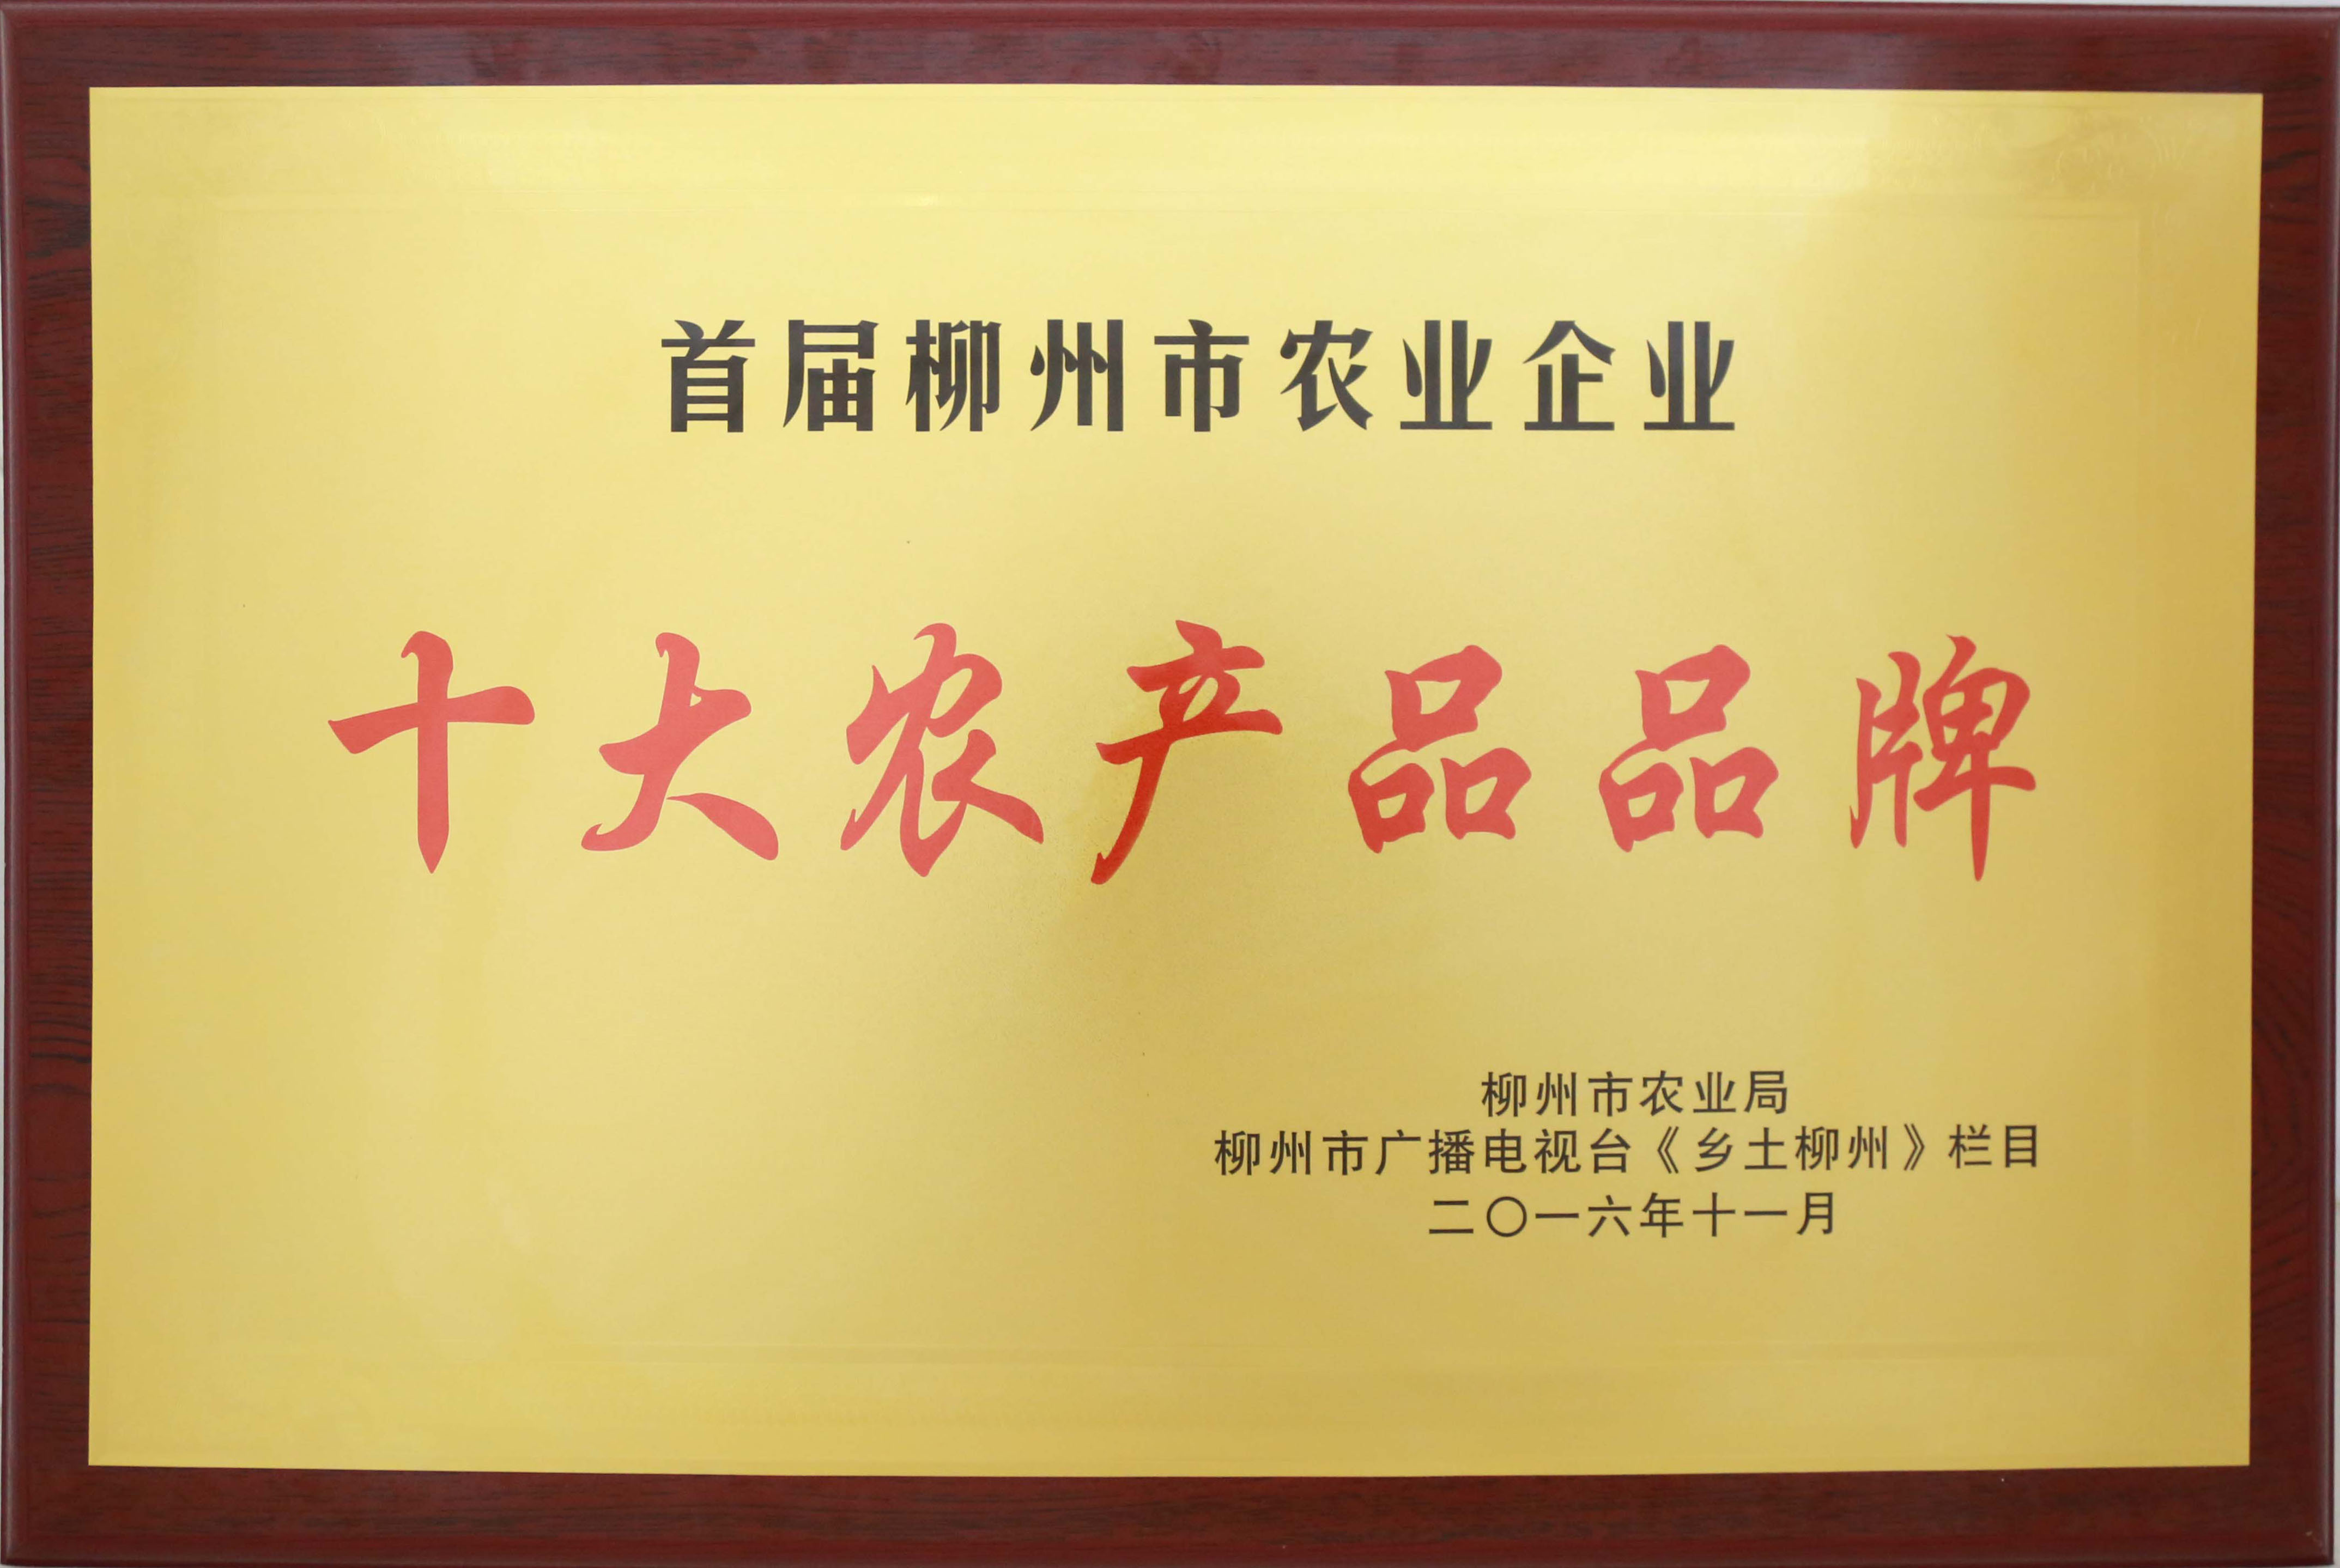 2016年，古岭龙集团荣获首届柳州市农业企业“十大农产品品牌”